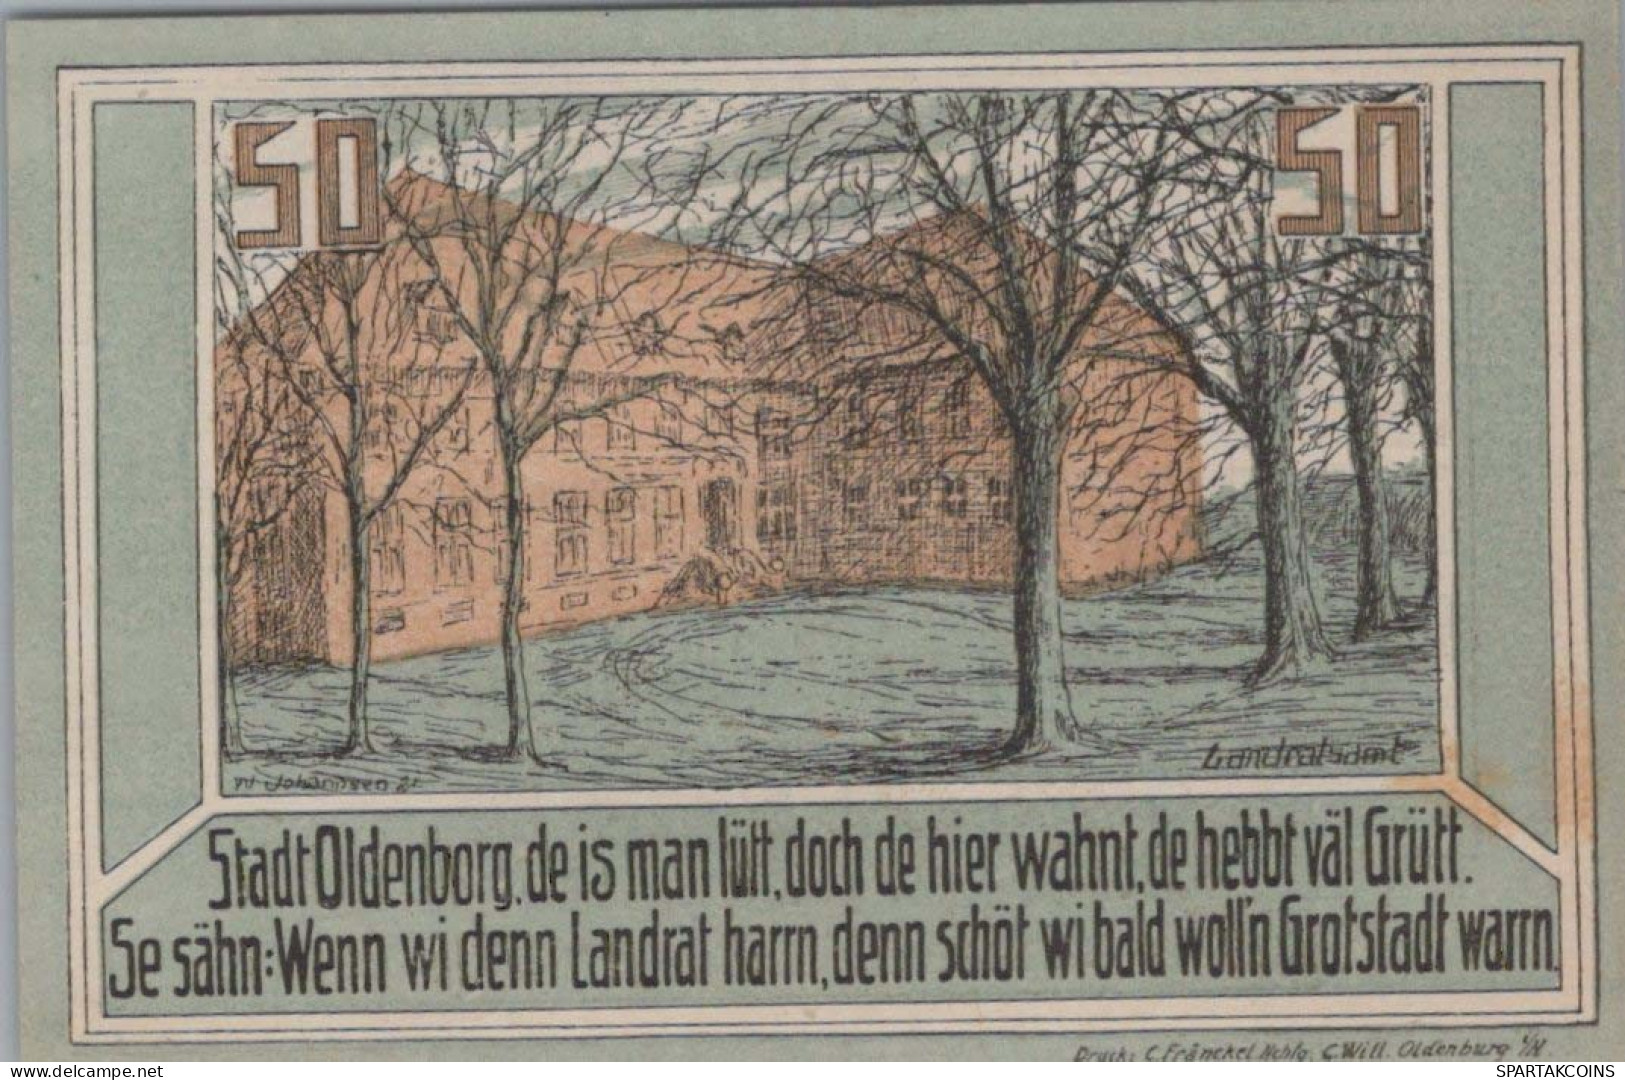 50 PFENNIG 1922 Stadt OLDENBURG IN HOLSTEIN Schleswig-Holstein DEUTSCHLAND #PF429 - Lokale Ausgaben